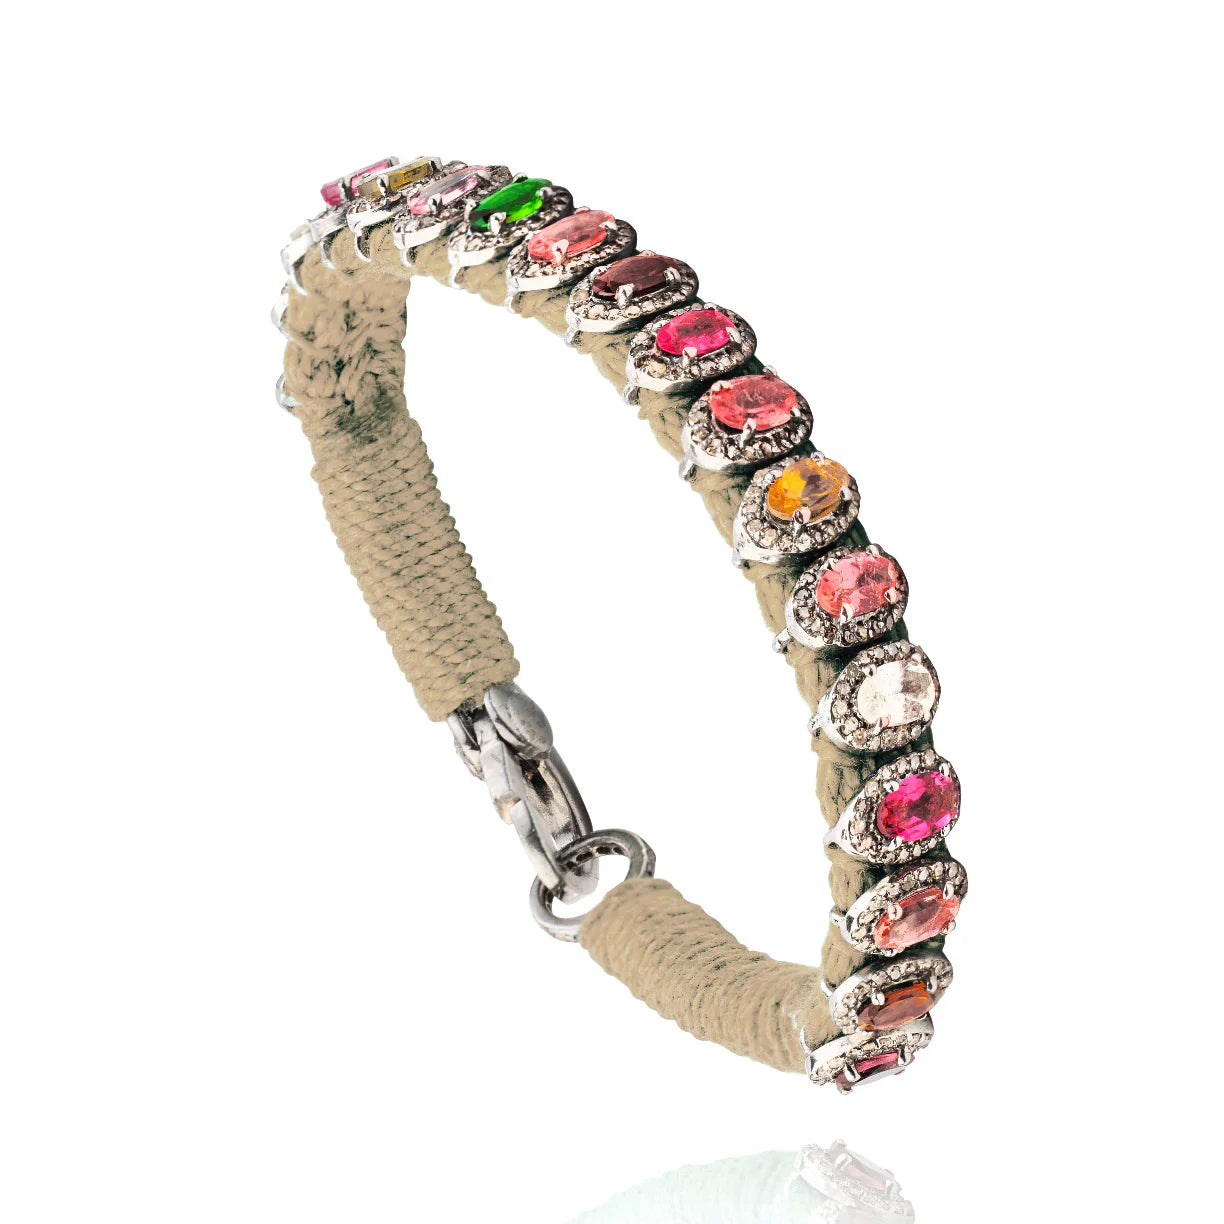 Rio Bracelet 18cm - More Colors Available